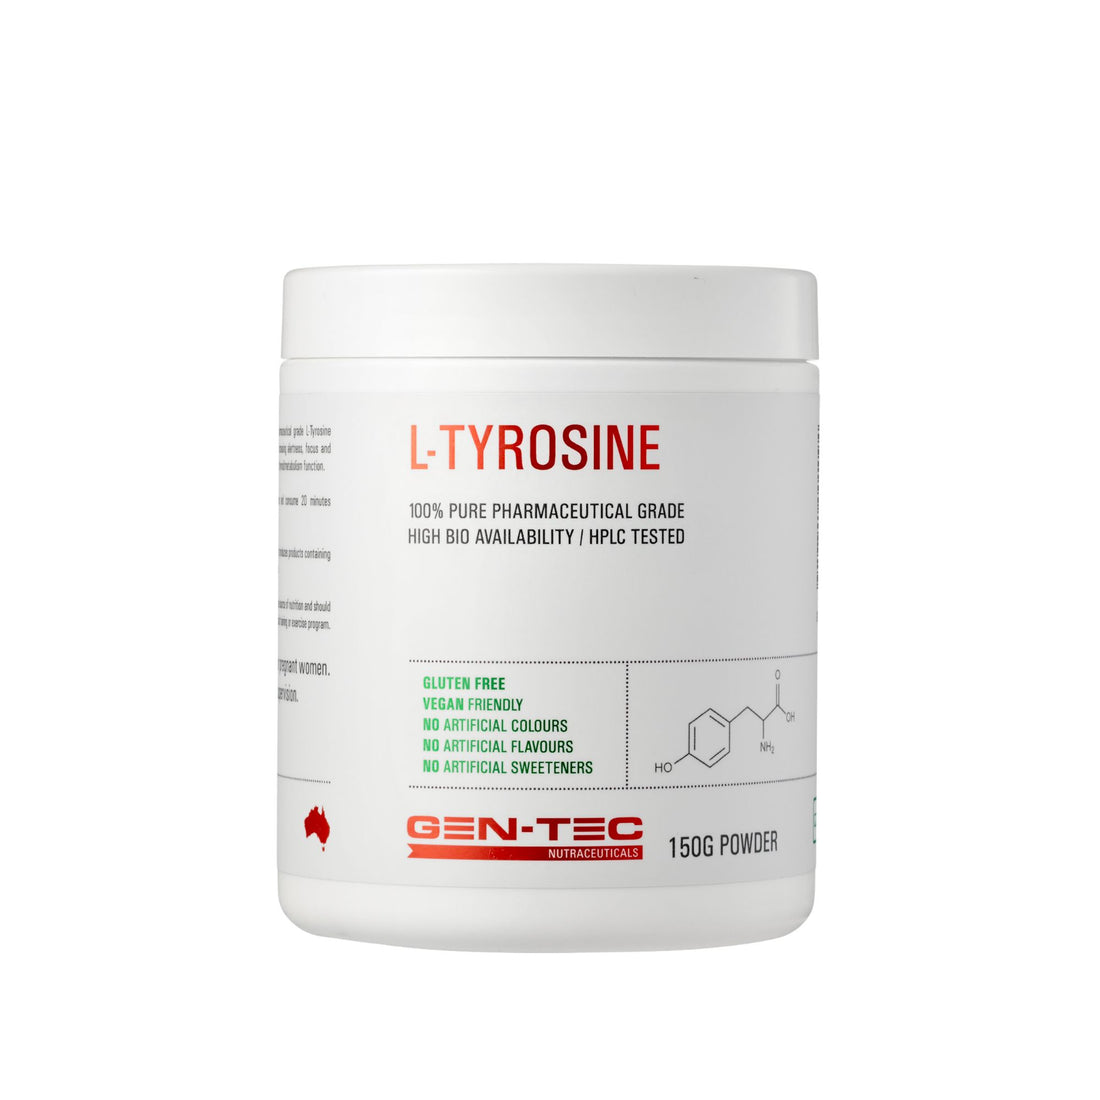 Gentec L-Tyrosine Nutraceuticals